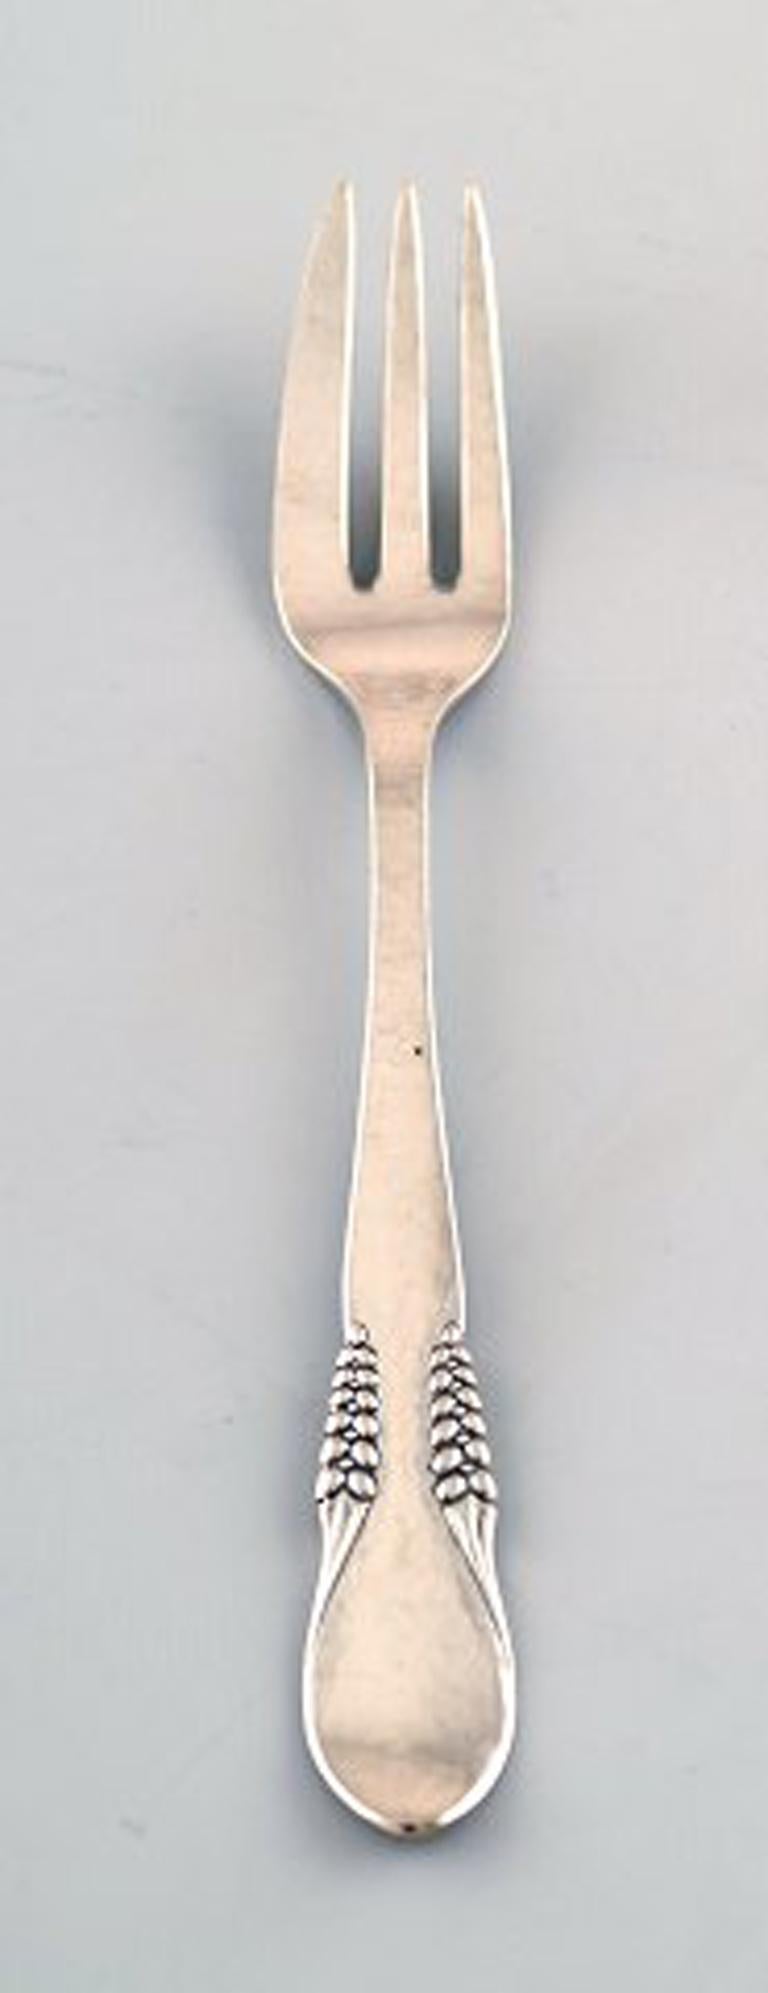 Dänisches Silber (0,830), sieben Kuchengabeln.
Gestempelt: CFH: Christian Fr. Heise. 1910-1920s.
In sehr gutem Zustand.
Maße: 14,5 cm.